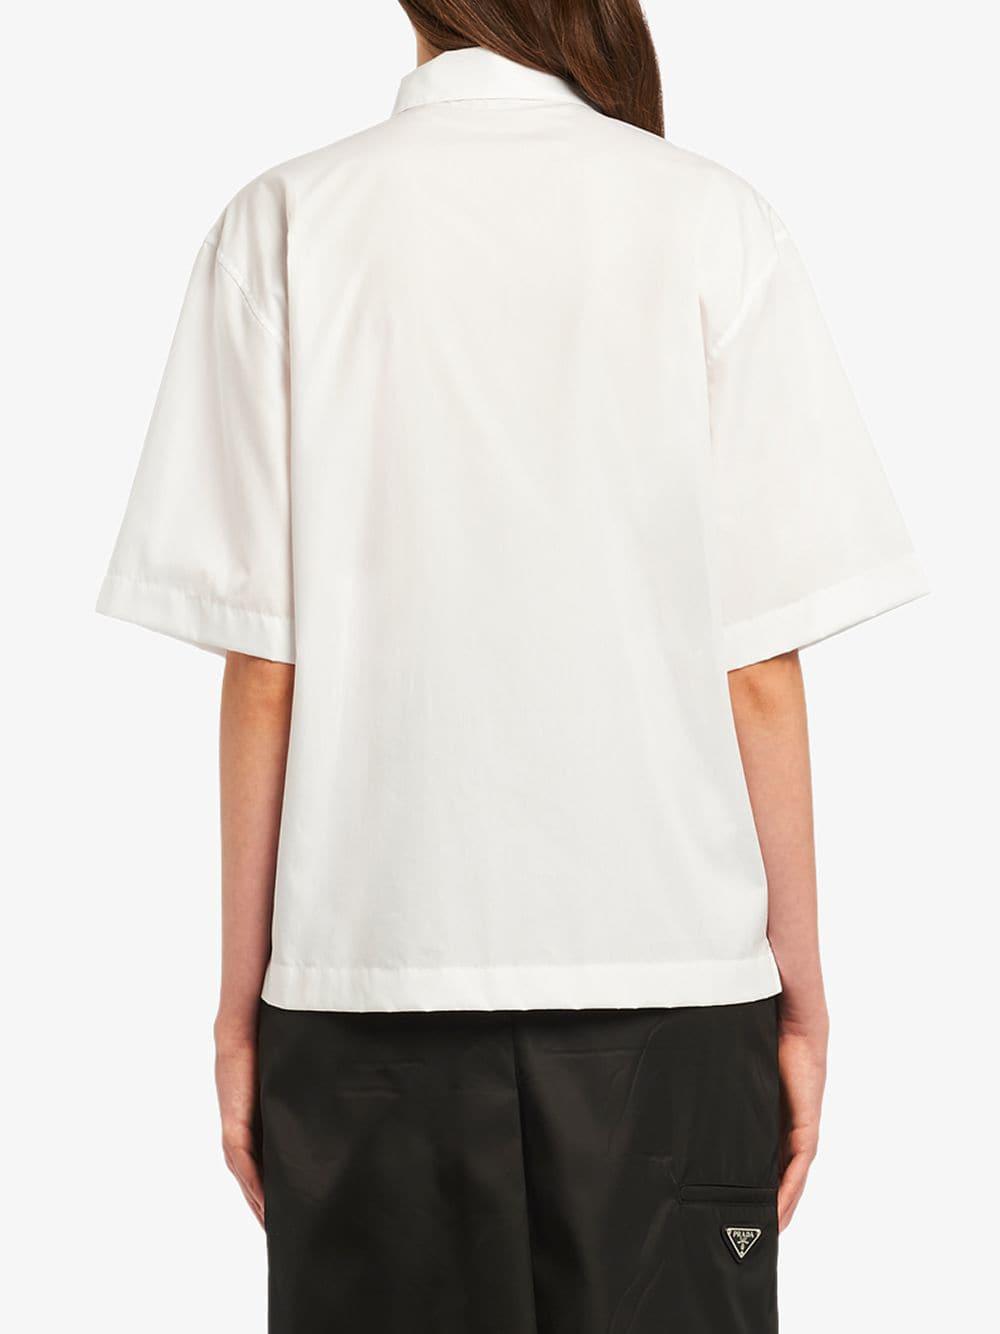 Prada Cotton Polo Shirt in White - Lyst